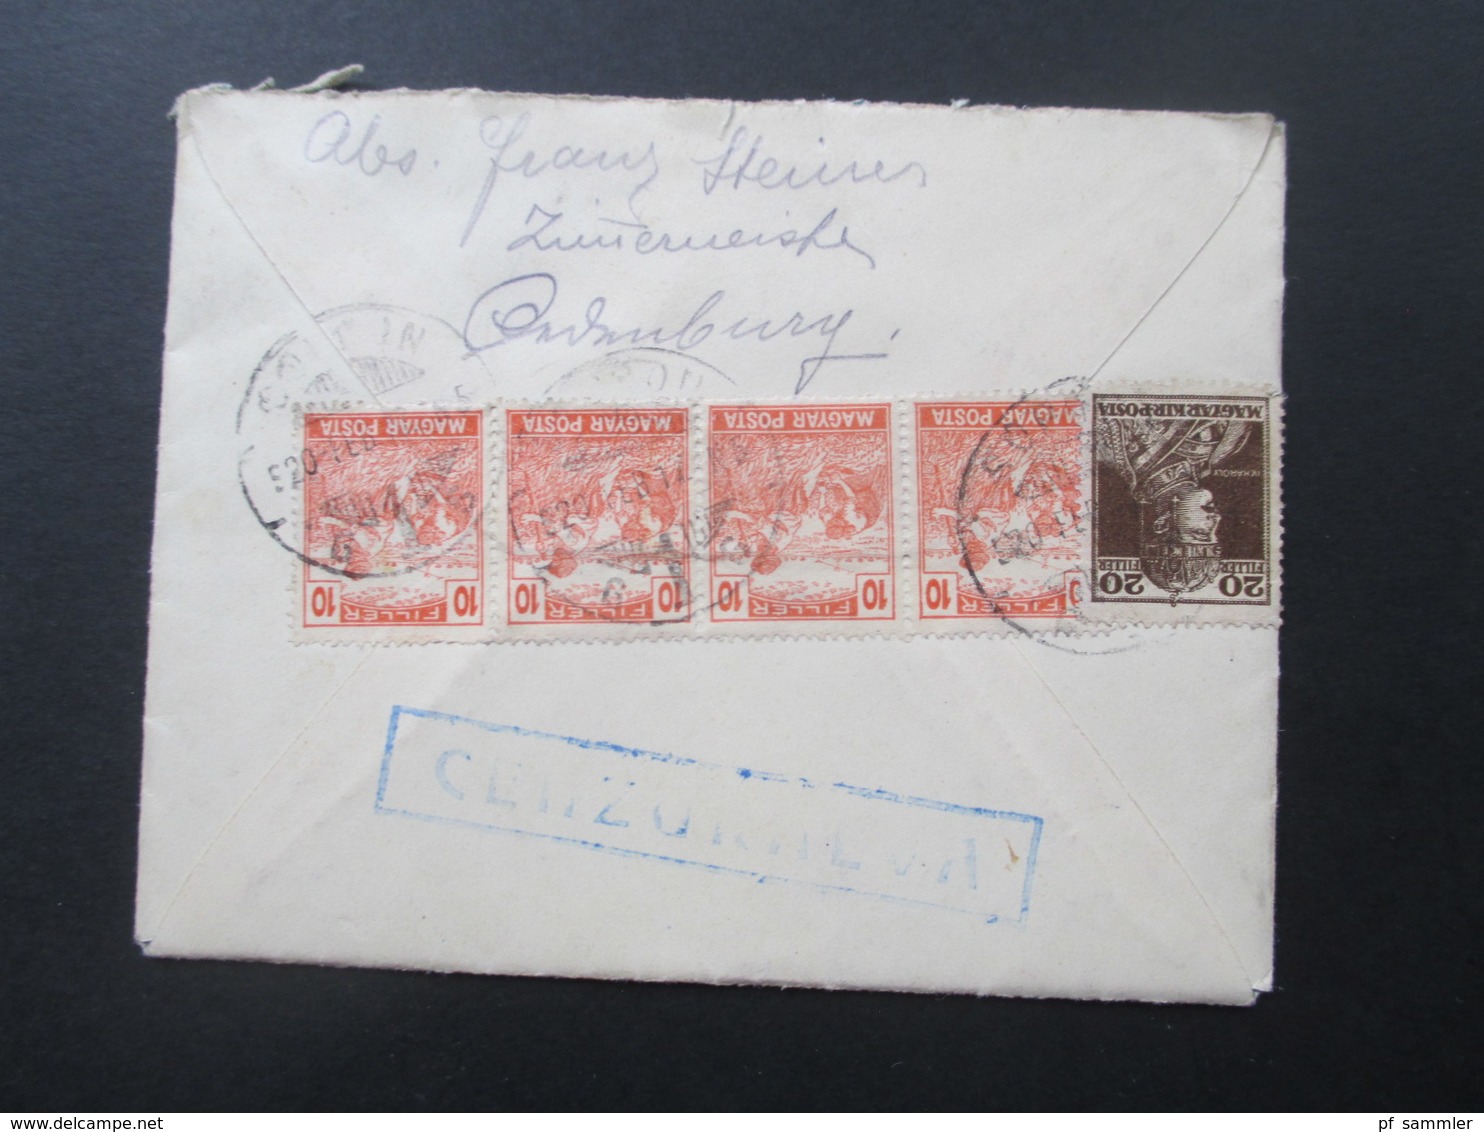 Ungarn 1920 Brief Nach Wien Gesendet Mit Inhalt An Den Ing. Ludwig Patsch. Cenzoralva / Zensurbeleg. Oedenburg - Covers & Documents